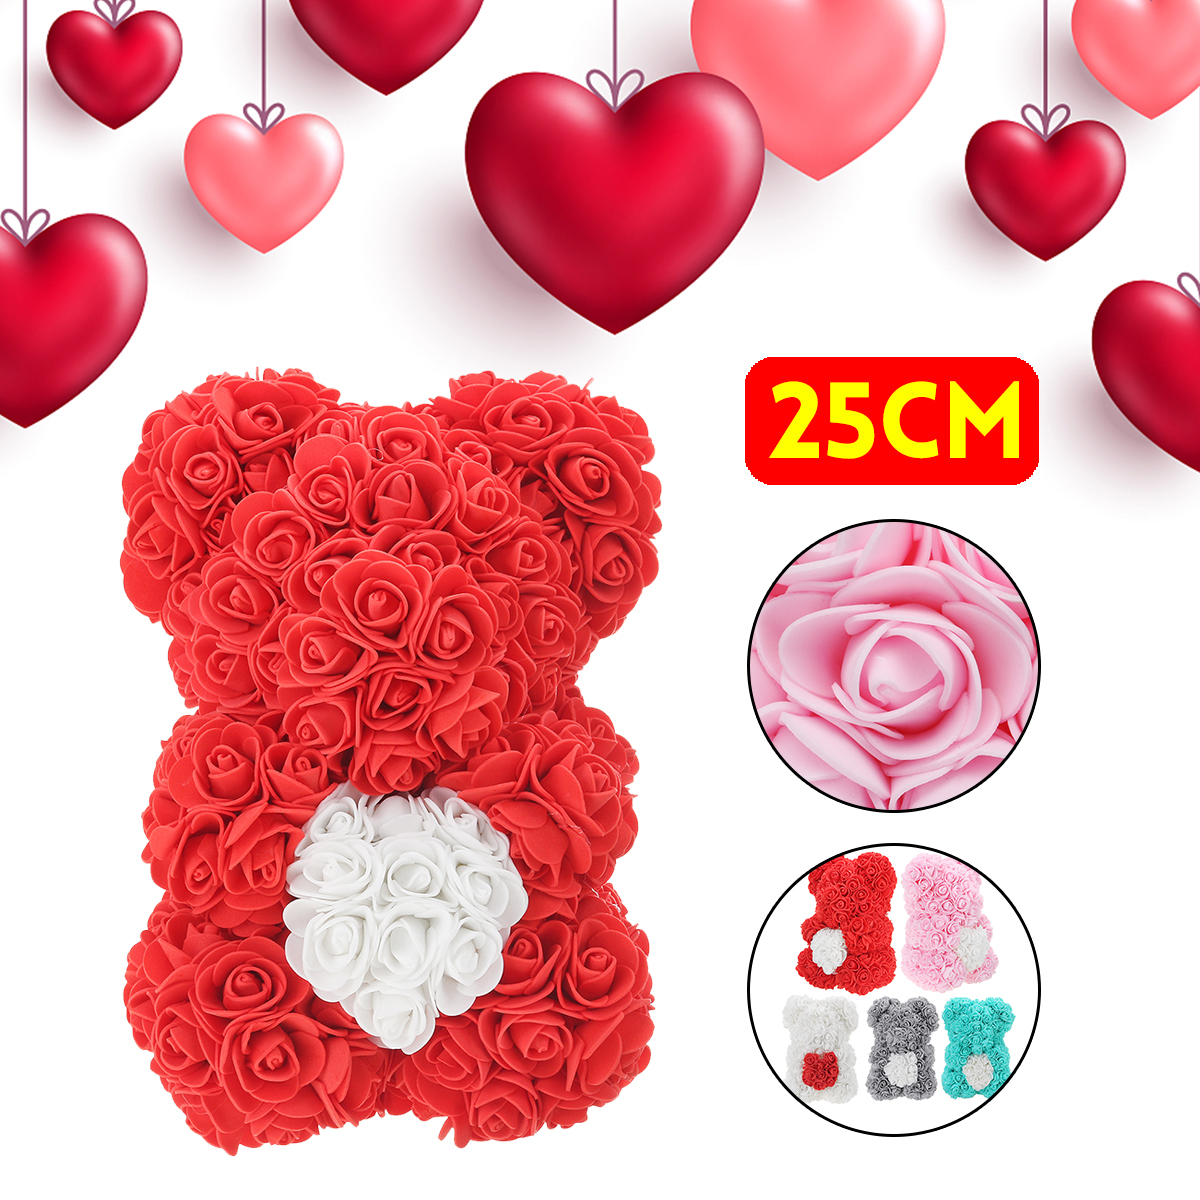 

DIY Искусственный Цветок Розы Медведь 25 см Красивая Для Свадебное Украшения Подарка На День Рождения